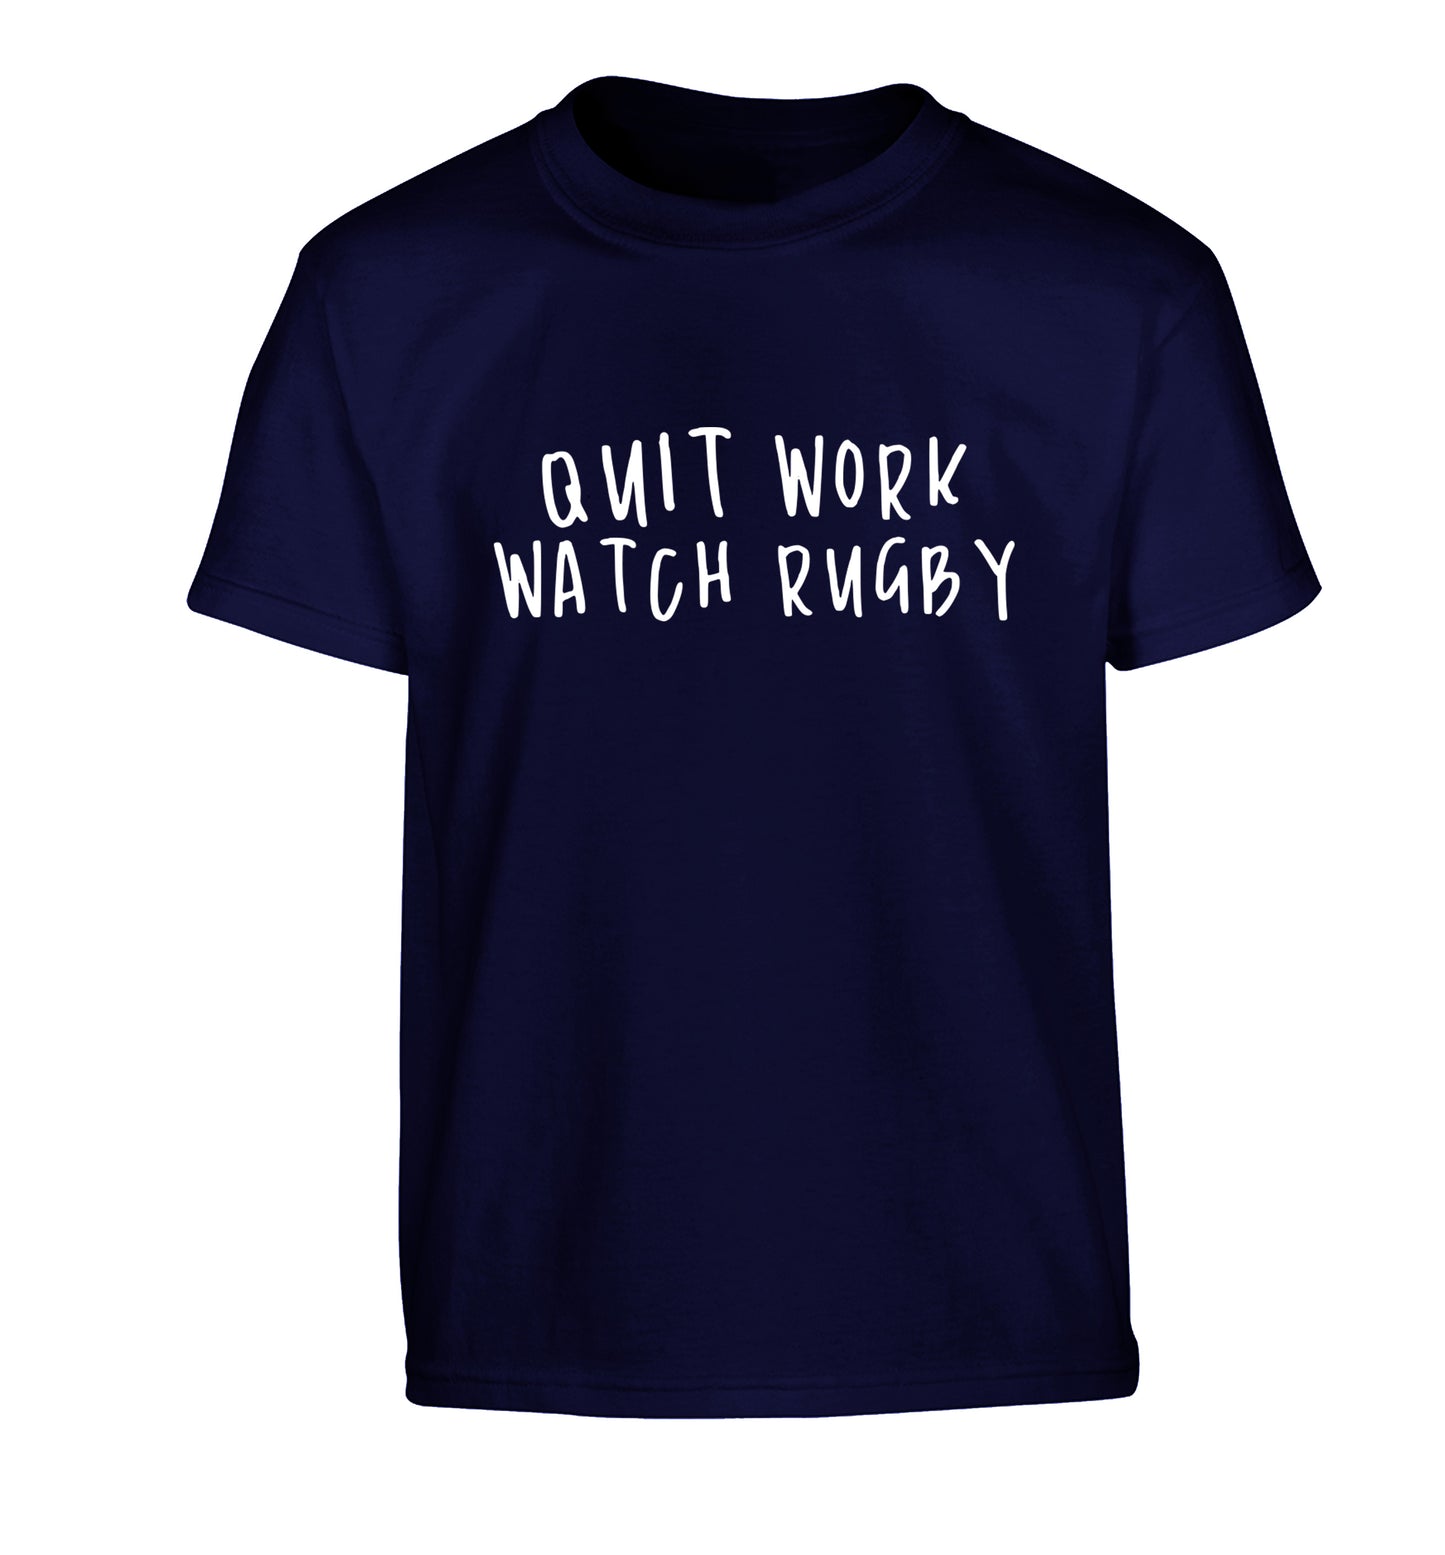 Quit work watch rugby Children's navy Tshirt 12-13 Years